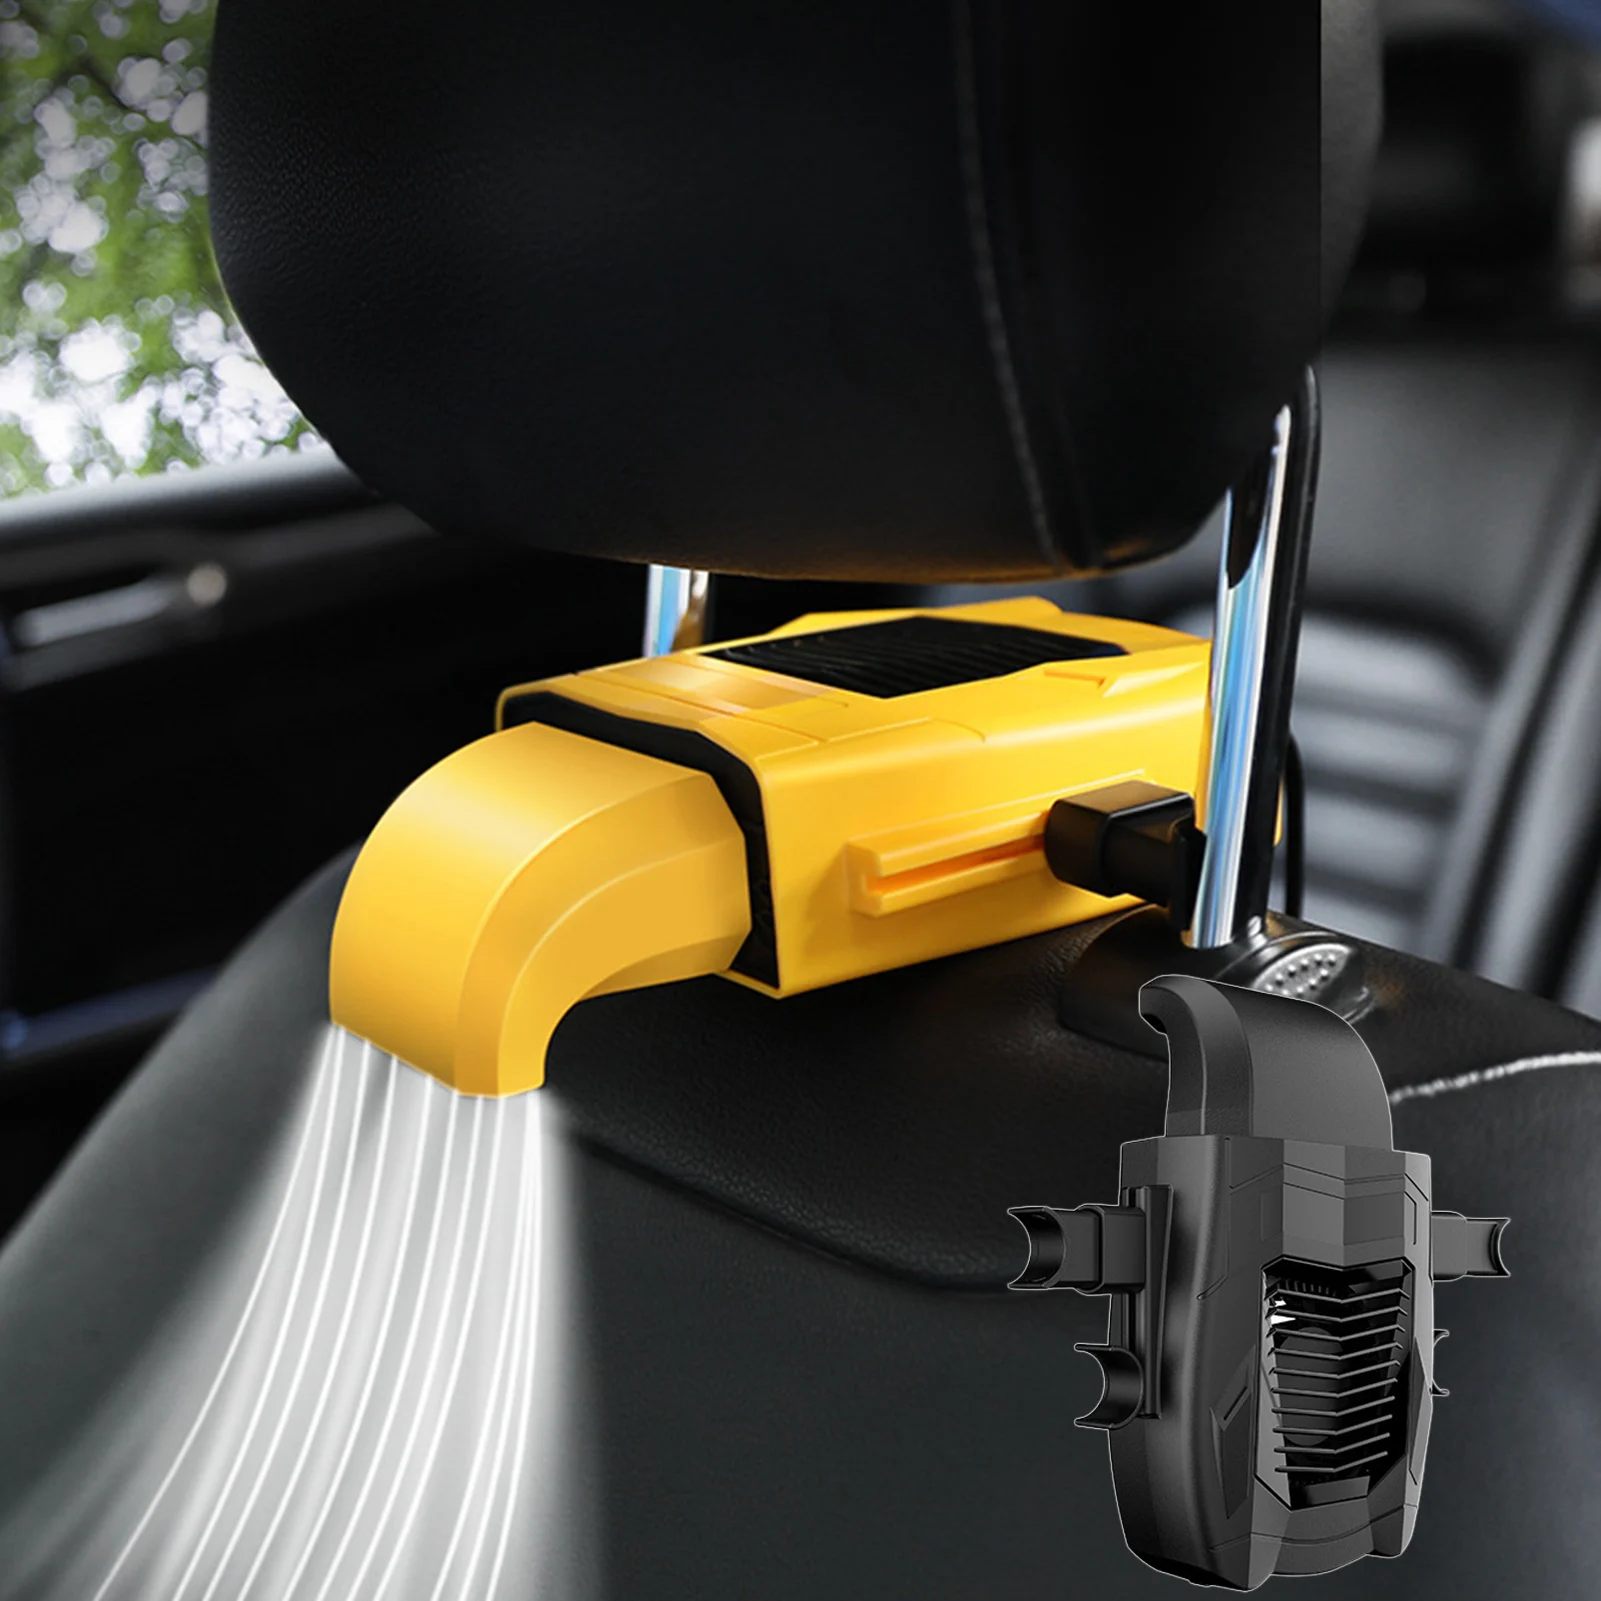 5V USB Перезаряжаемый Вентилятор заднего сиденья Портативный вентилятор автокресла с 3-ступенчатой регулировкой для охлаждения спинки автокресла Воздушный вентилятор для автомобилей